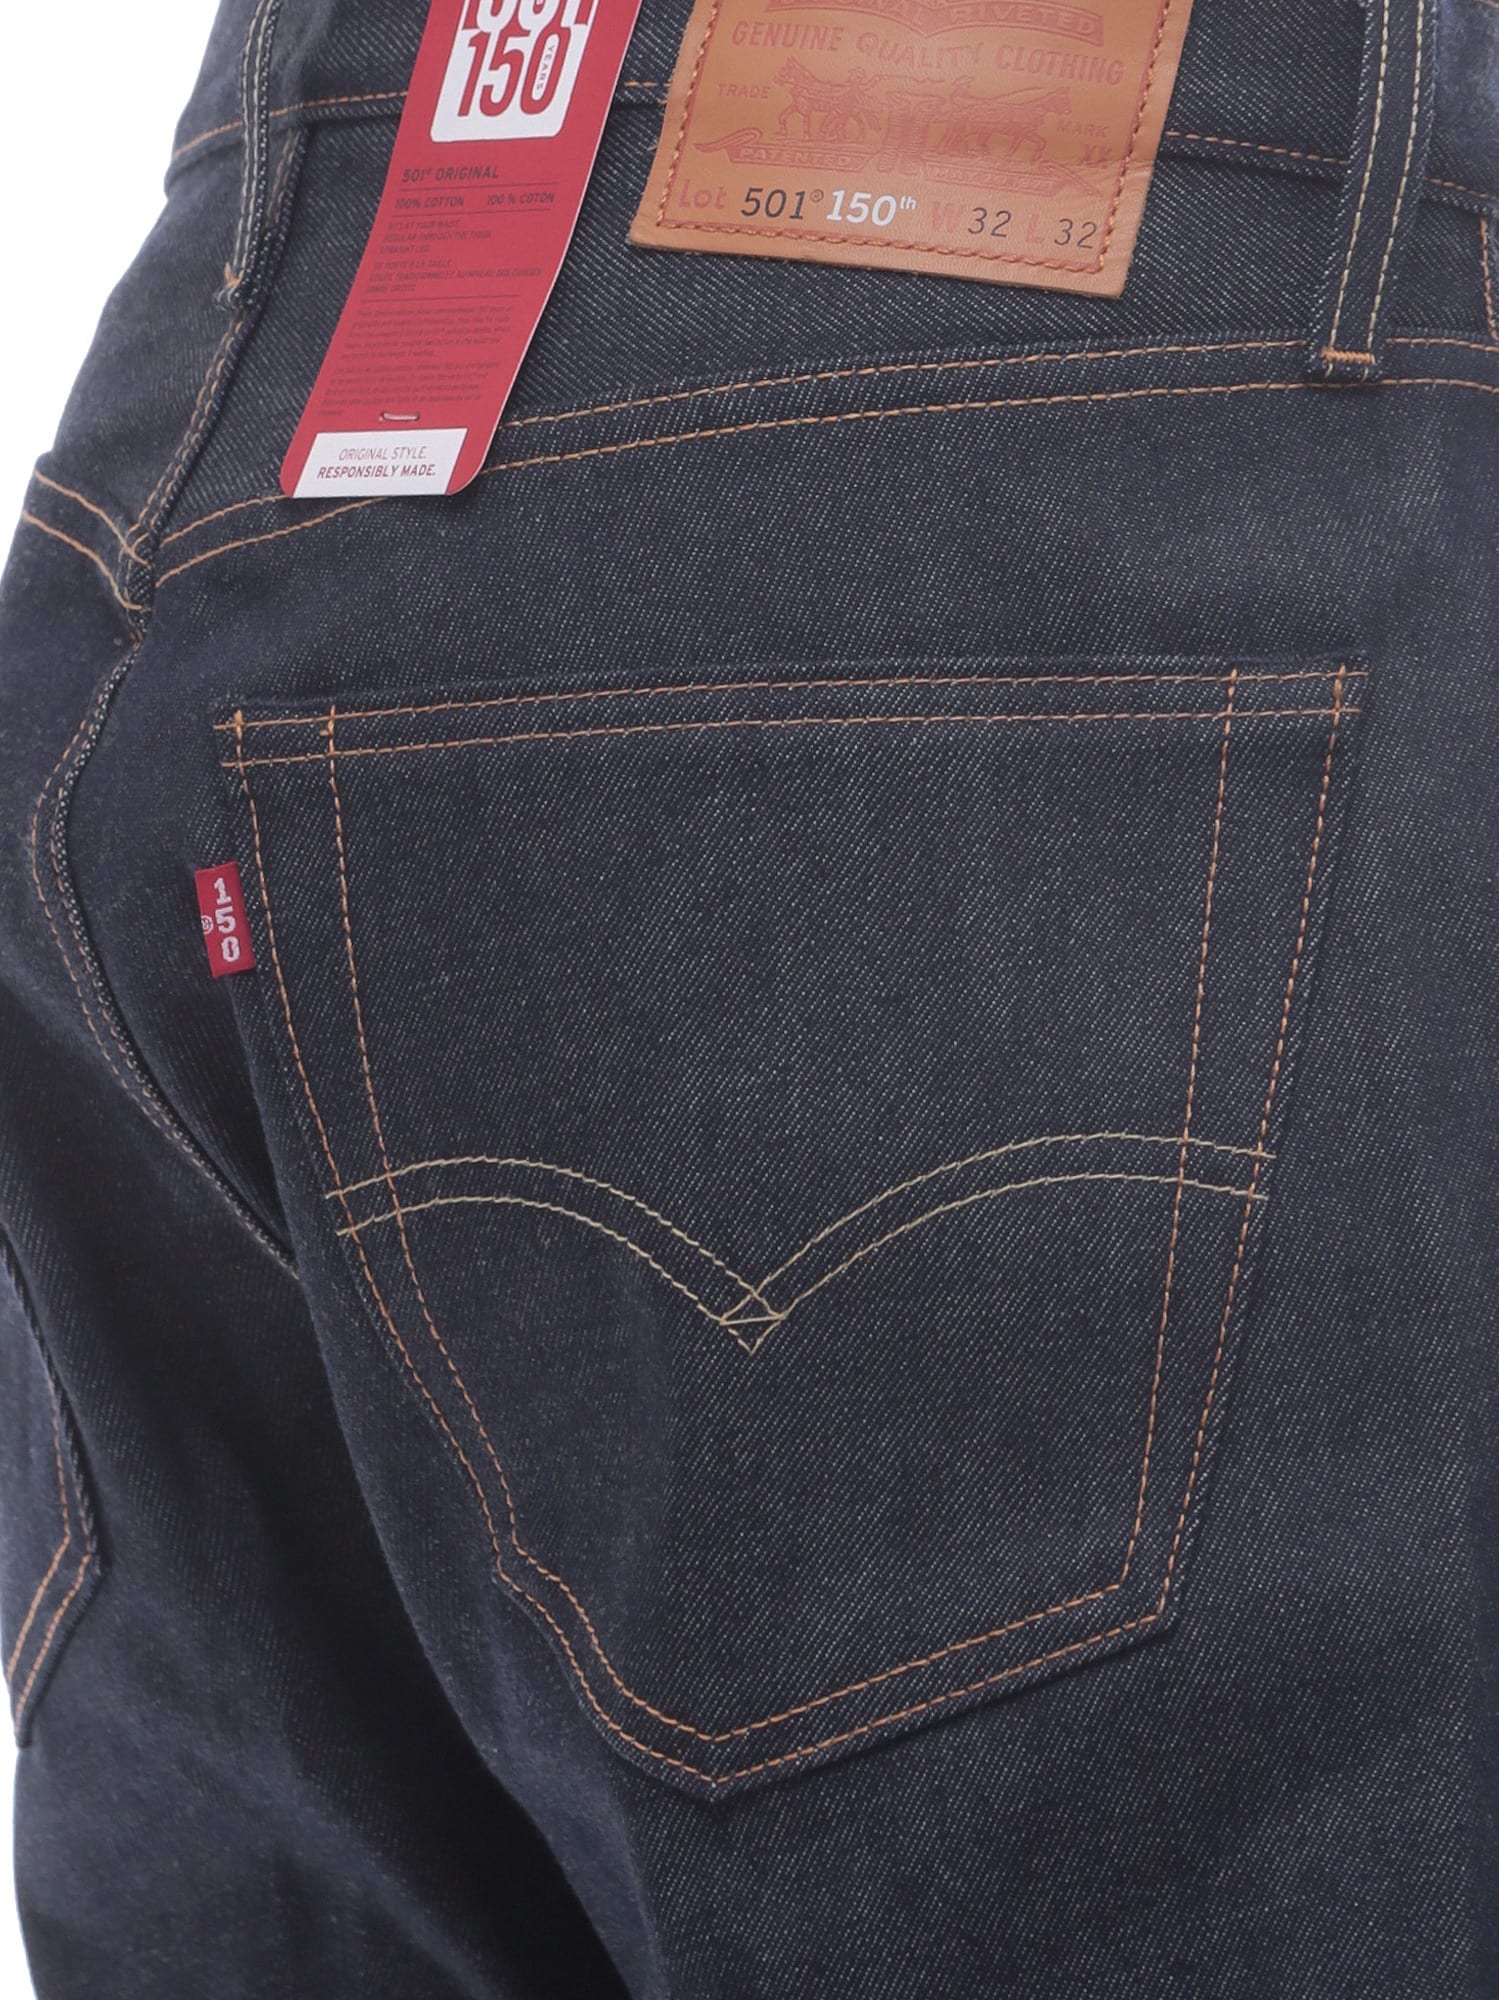 Shop Levi's 501 Jeans